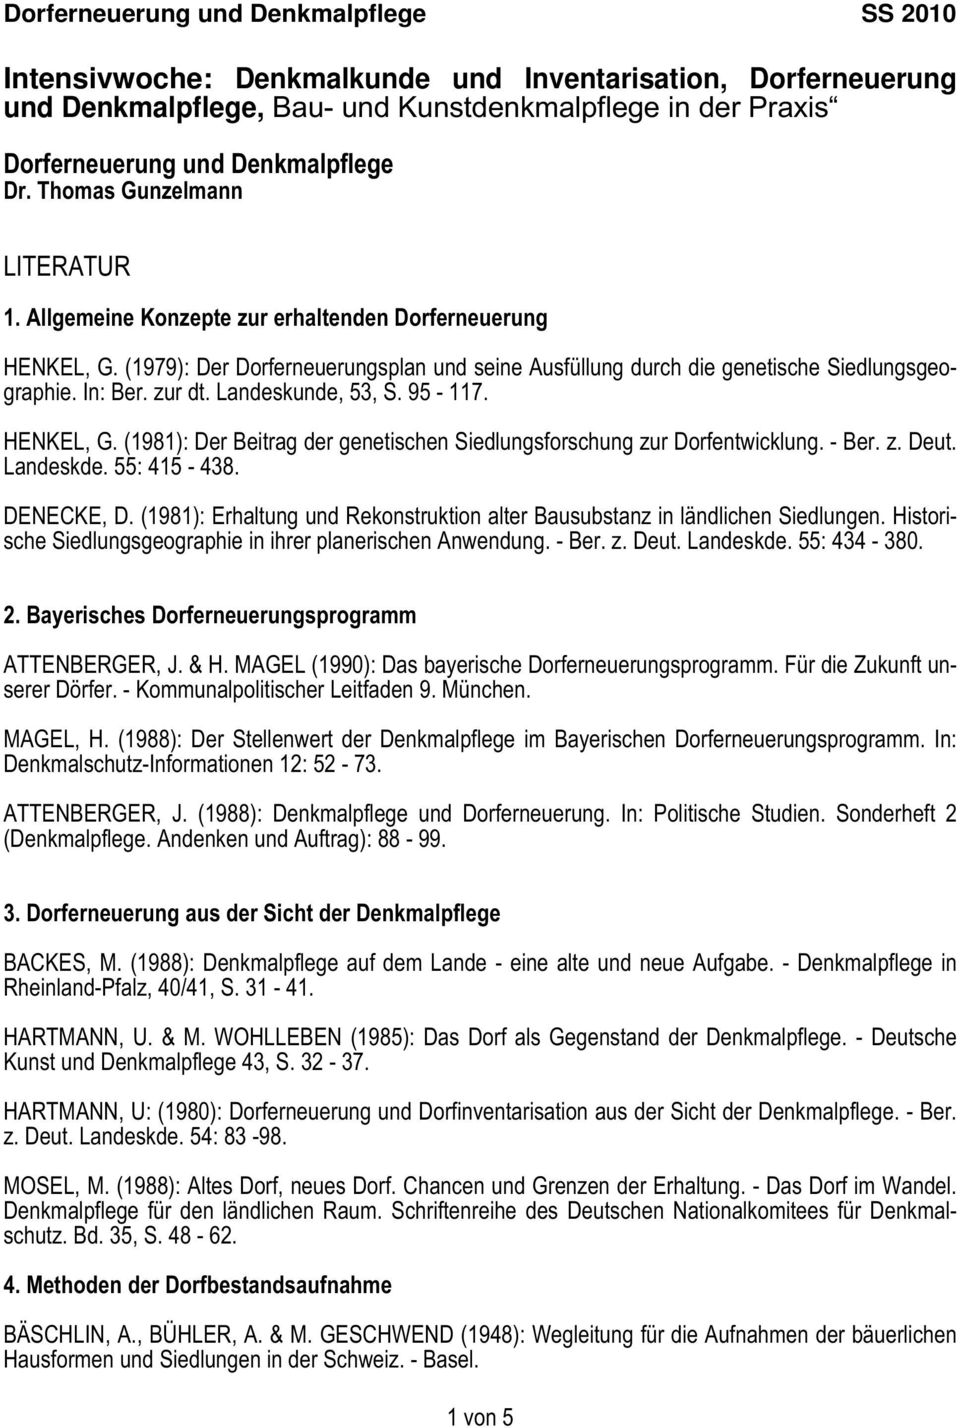 95-117. HENKEL, G. (1981): Der Beitrag der genetischen Siedlungsforschung zur Dorfentwicklung. - Ber. z. Deut. Landeskde. 55: 415-438. DENECKE, D.